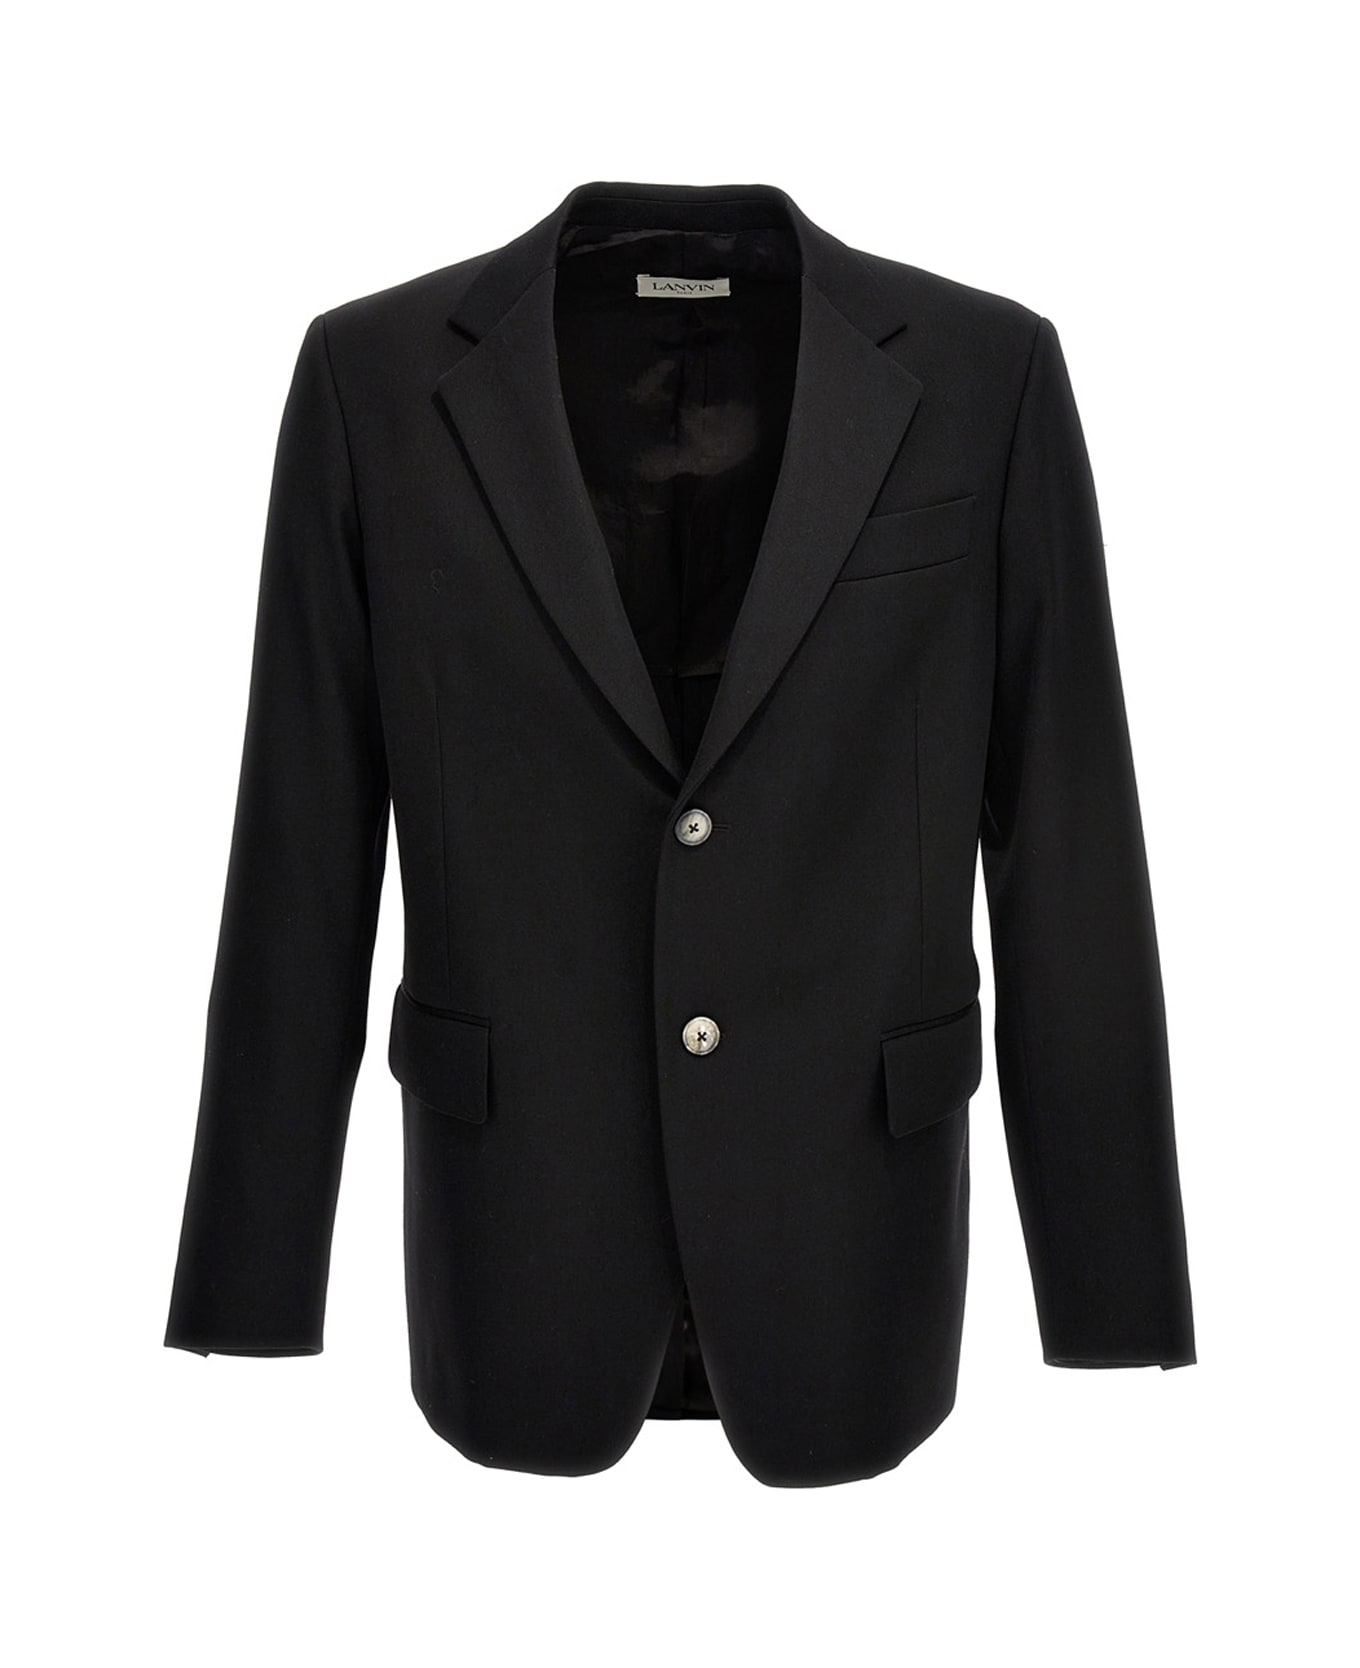 Lanvin Wool Single Breast Blazer Jacket - Black   ブレザー